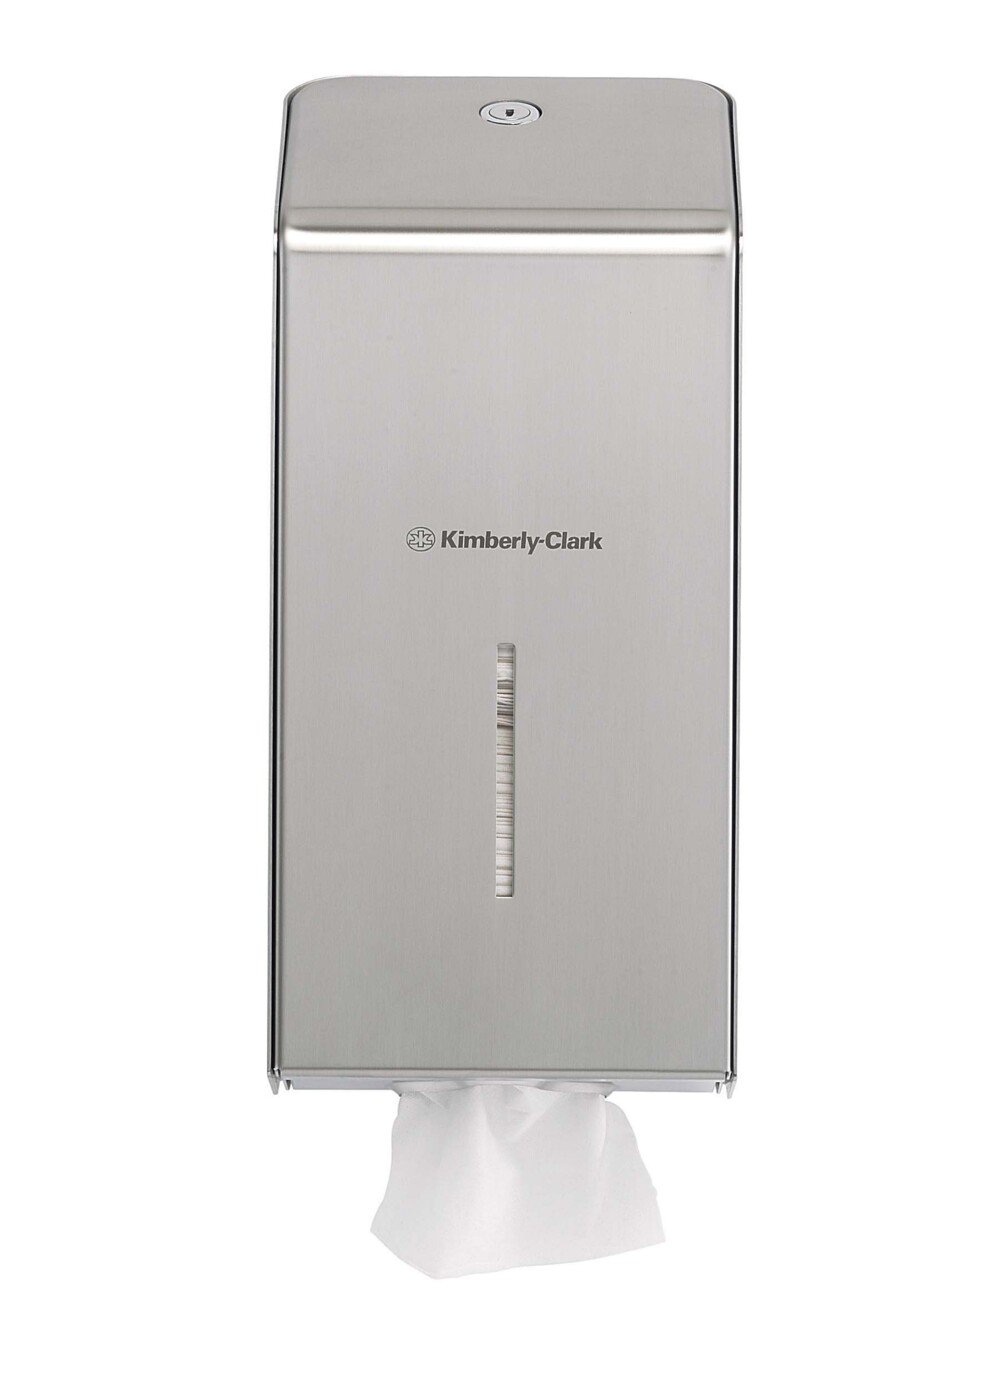 Kimberly-Clark Professional™ Stainless Steel Folded Toilet Tissue Dispenser 8972 - Single Sheet Toilet Paper Dispenser - 1 x Stainless Steel Dispenser - 8972